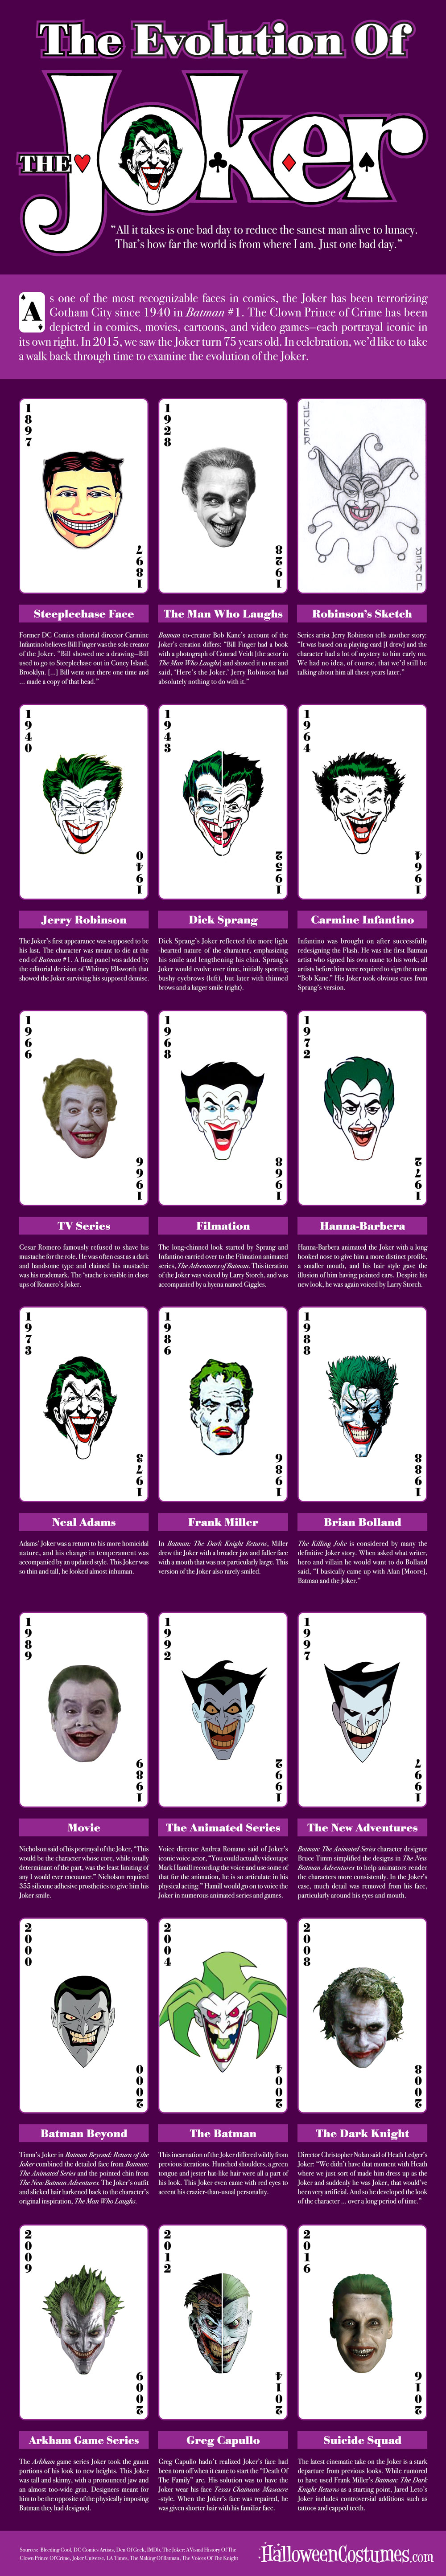  Evolution of the Joker Infographic